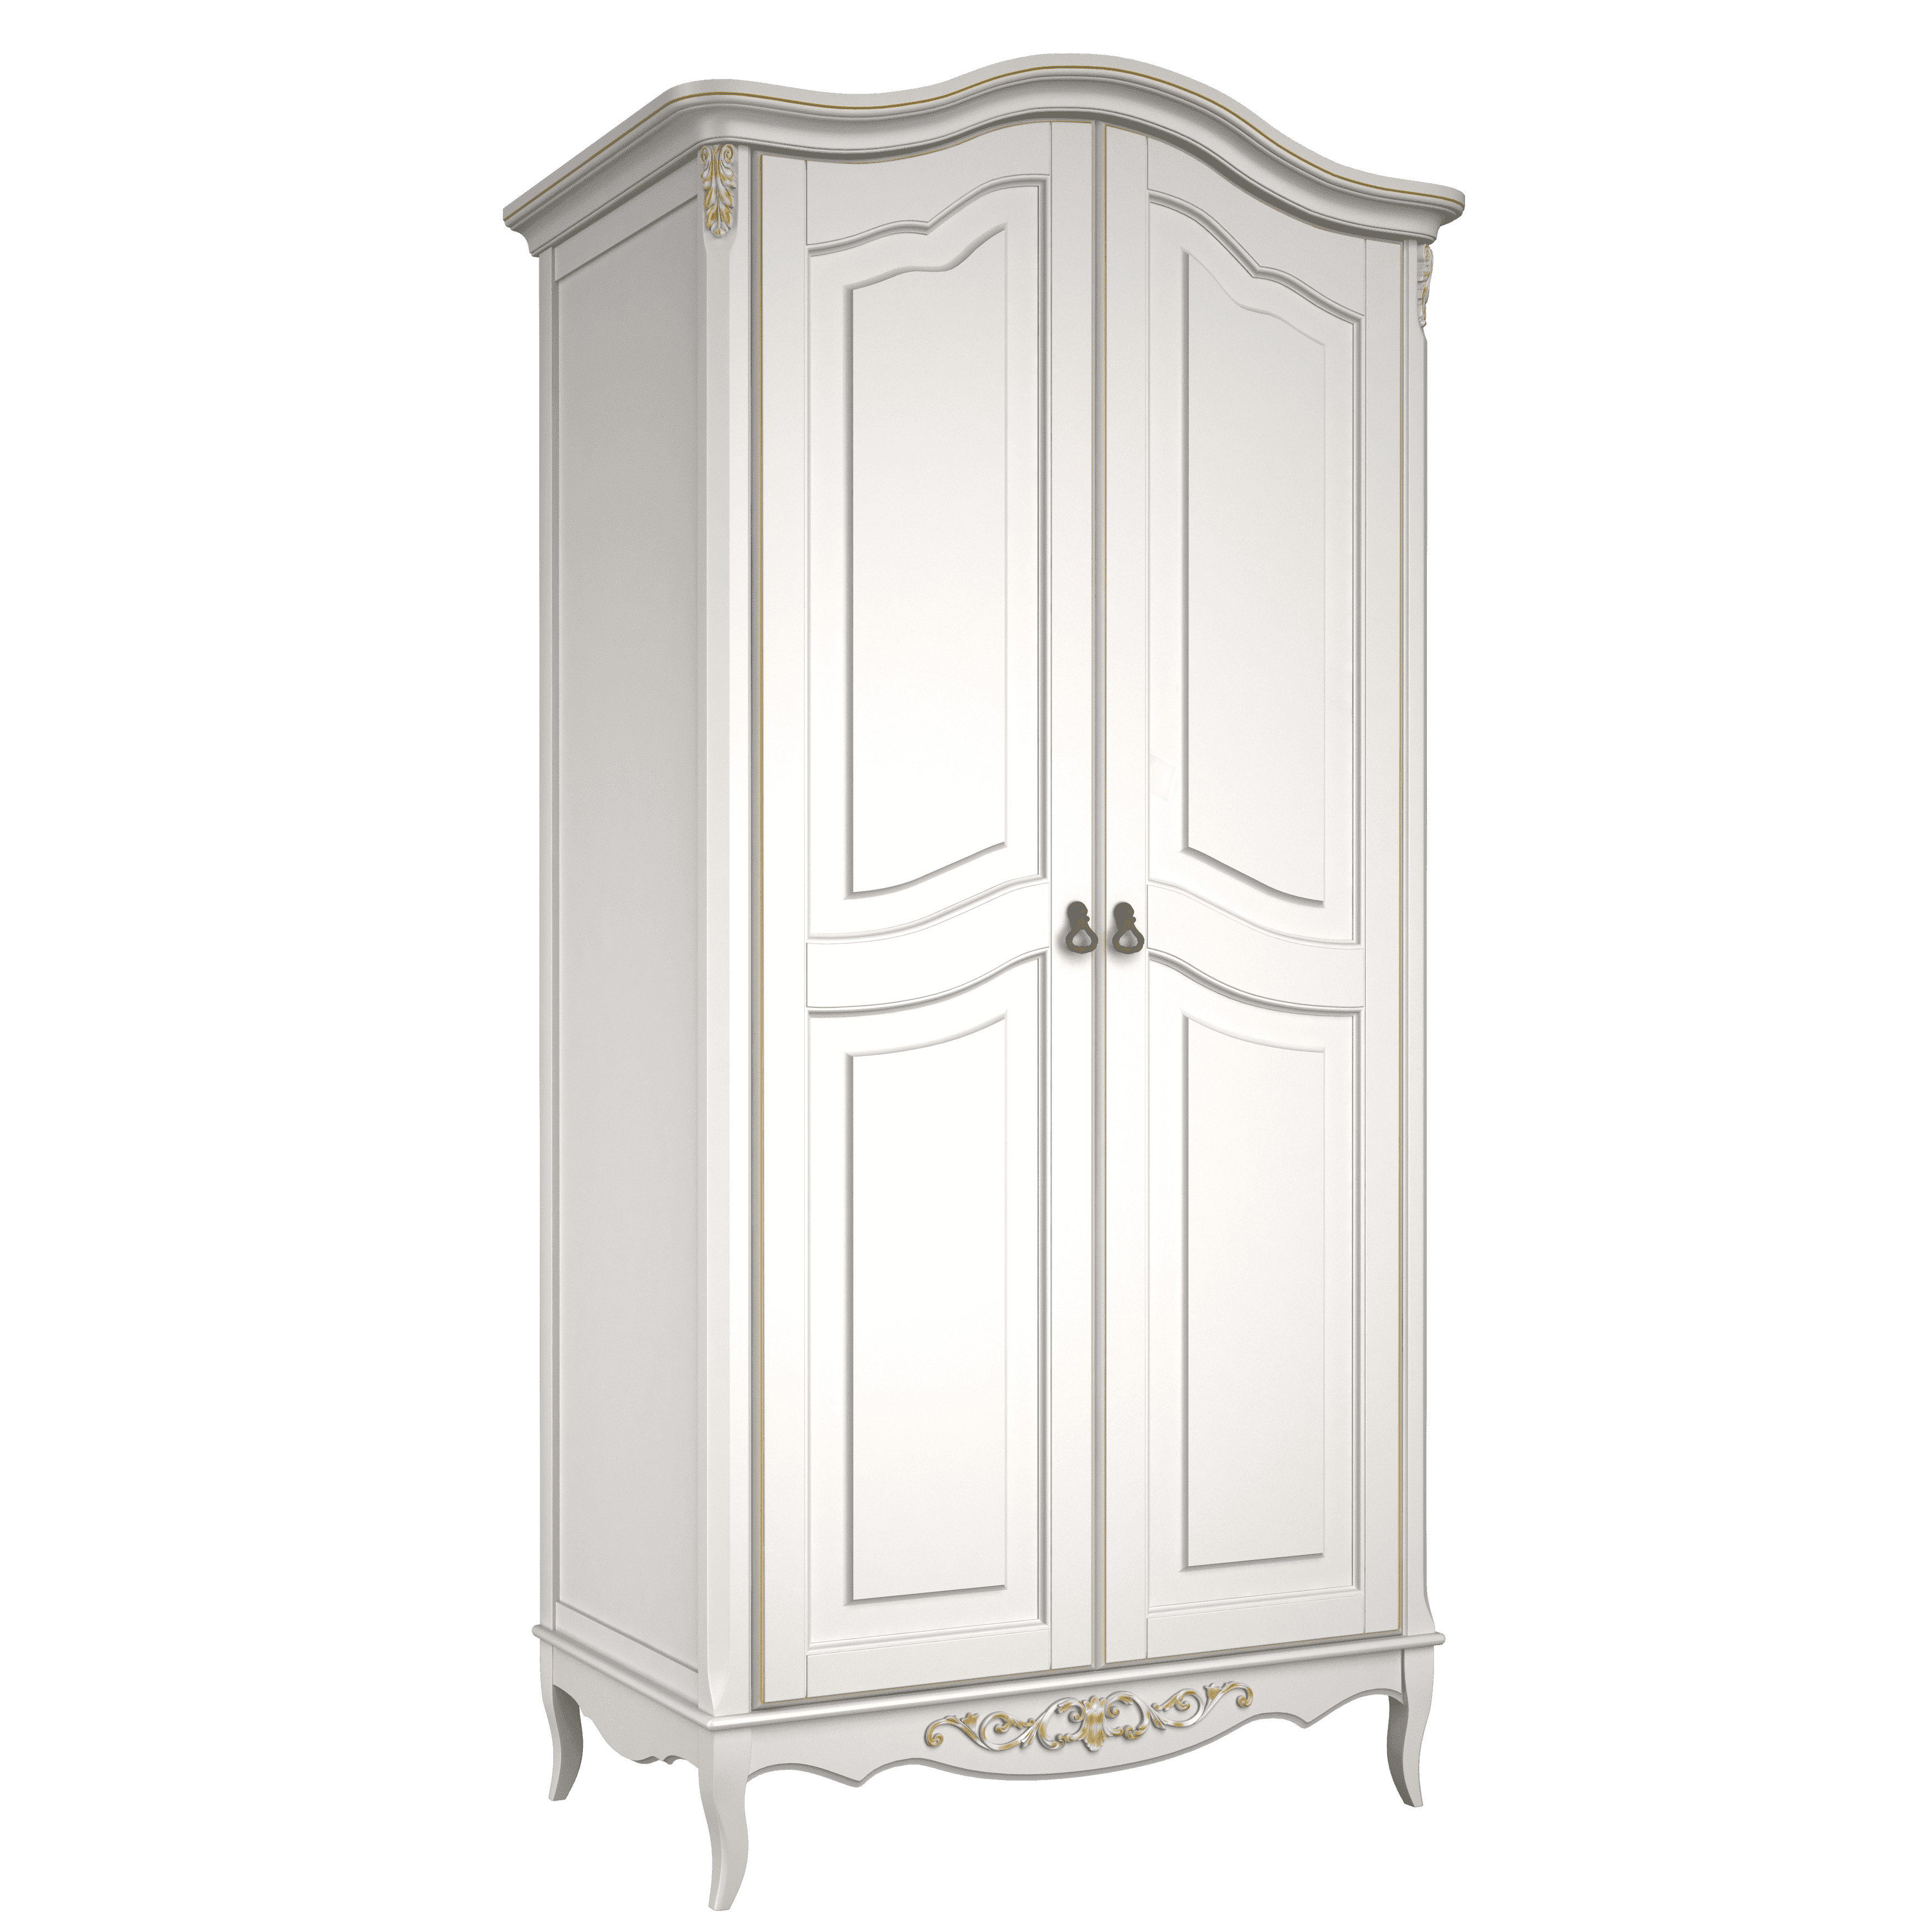 Шкаф платяной Marseille Dore, 2-х дверный, цвет: слоновая кость-золото (B802G)B802G